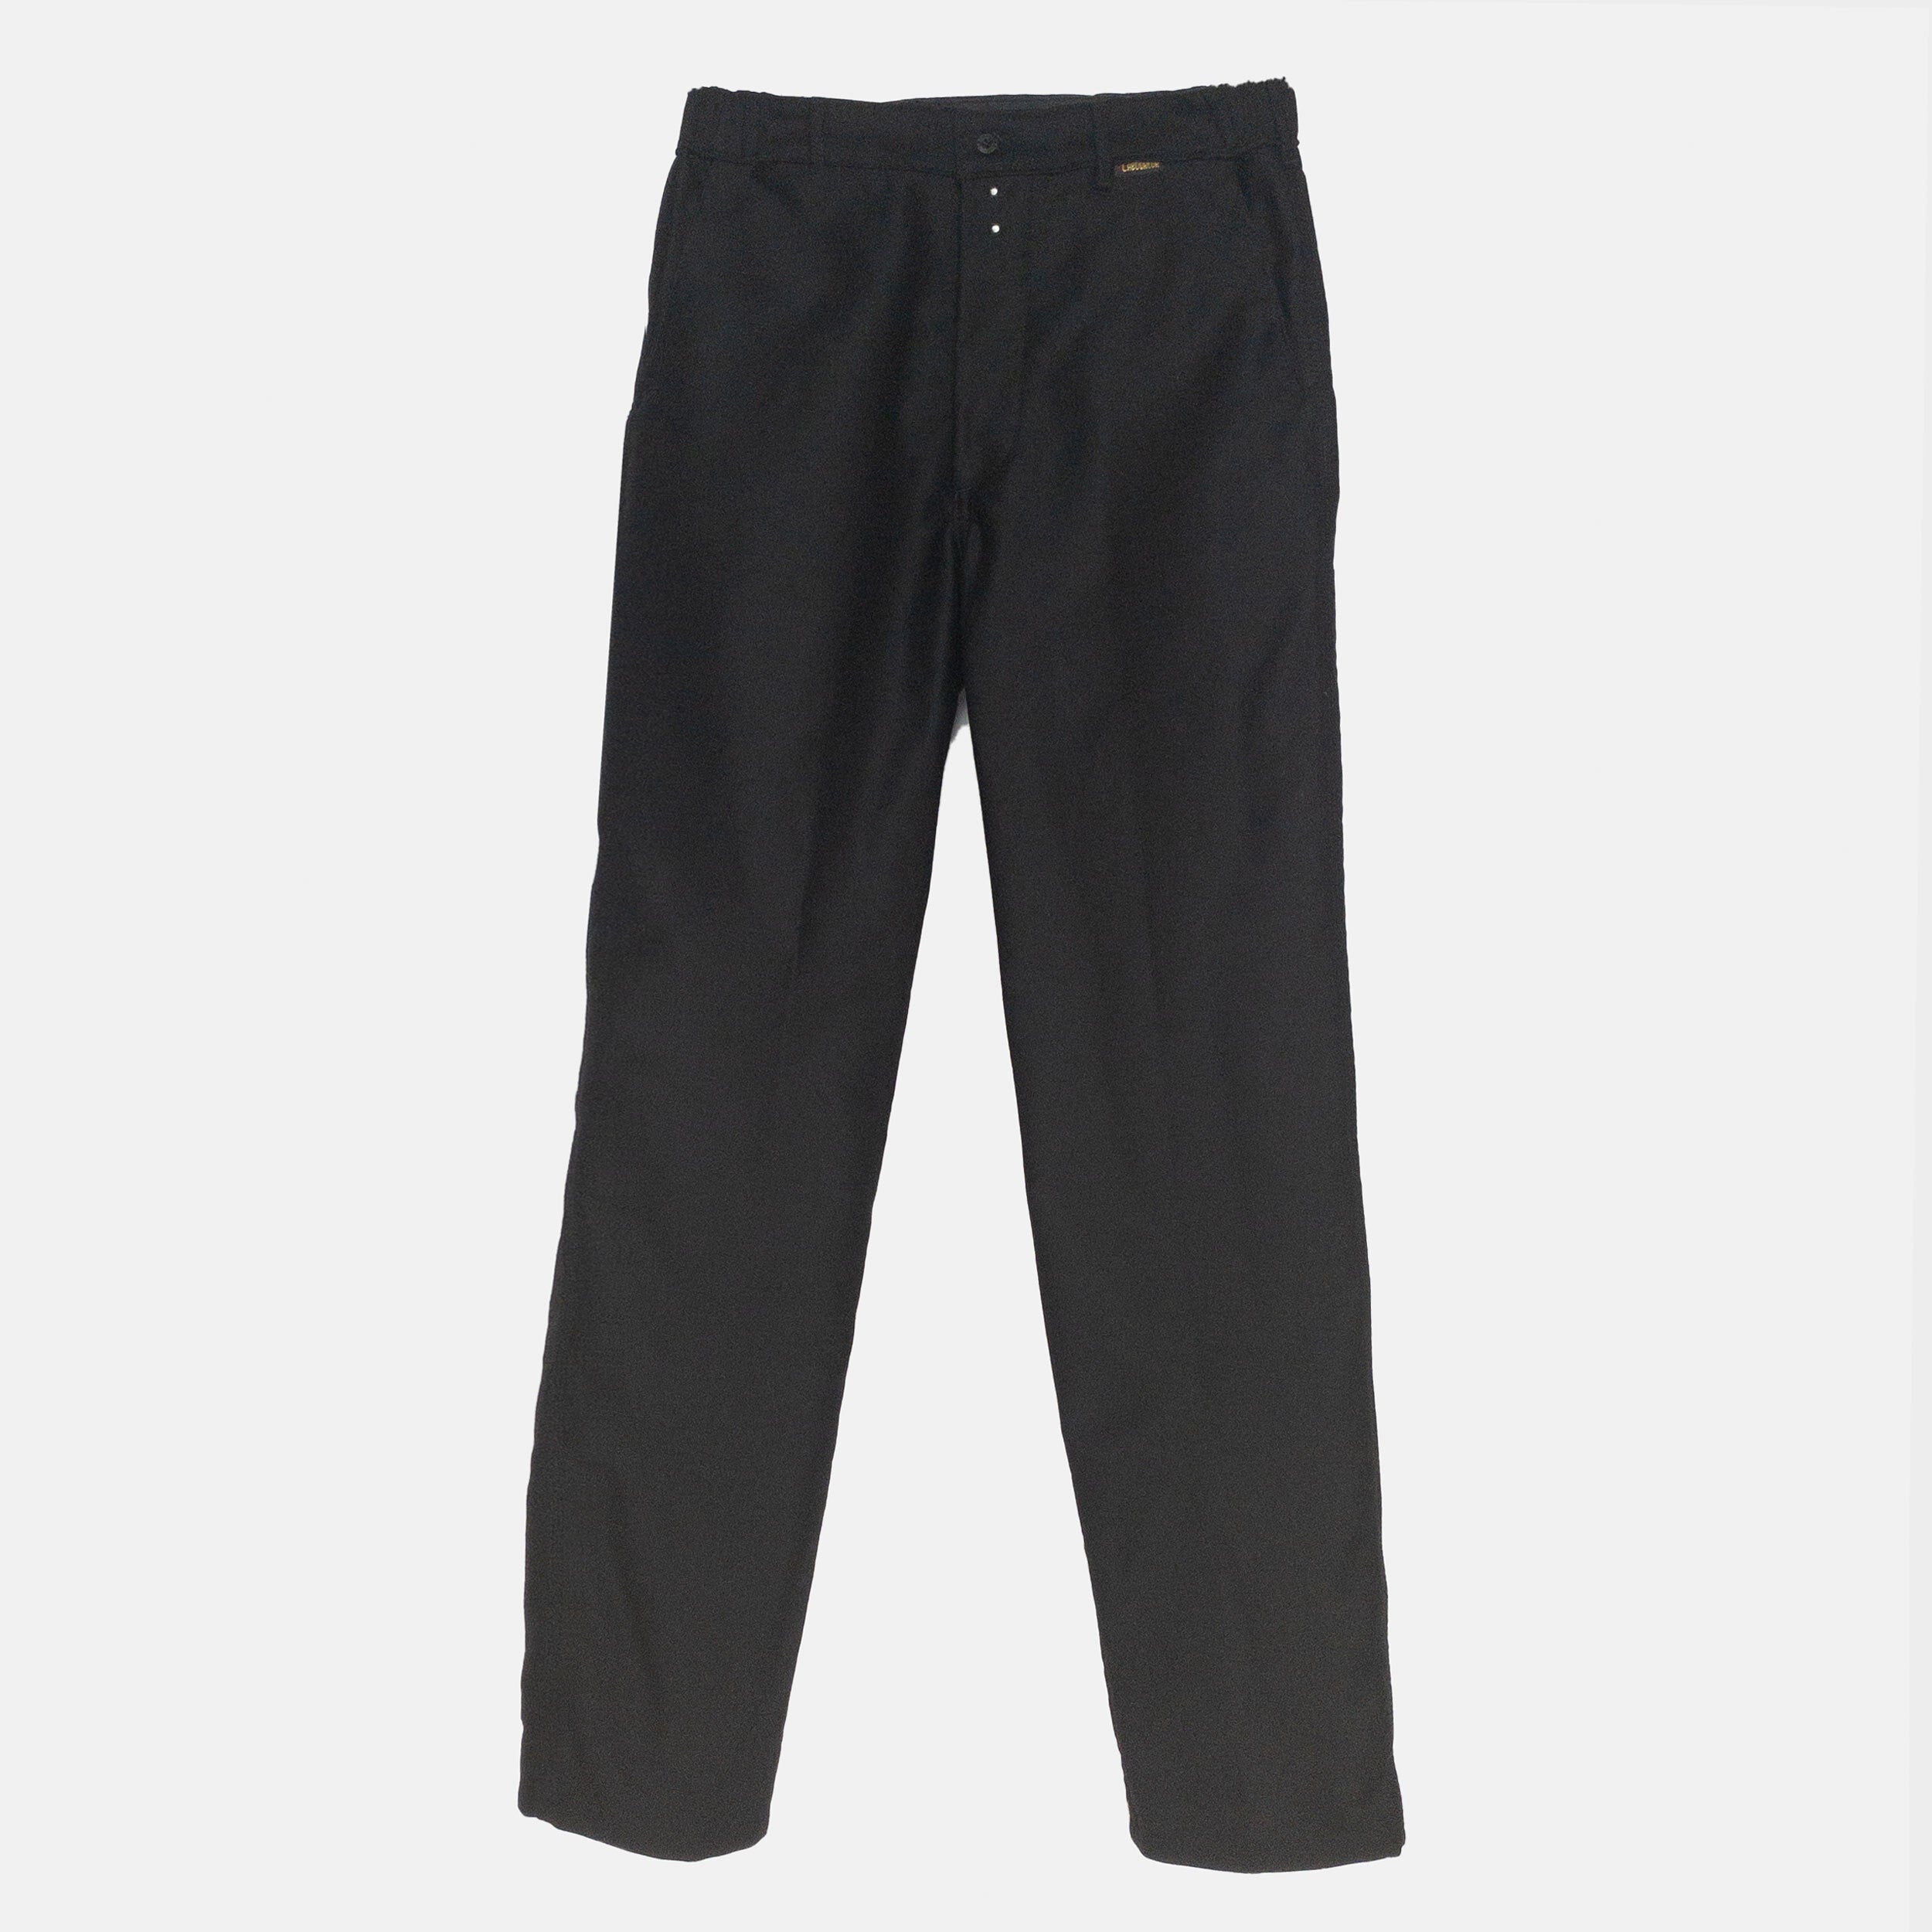 爆買い正規品40s French black moleskin pants サスペンダー付き パンツ